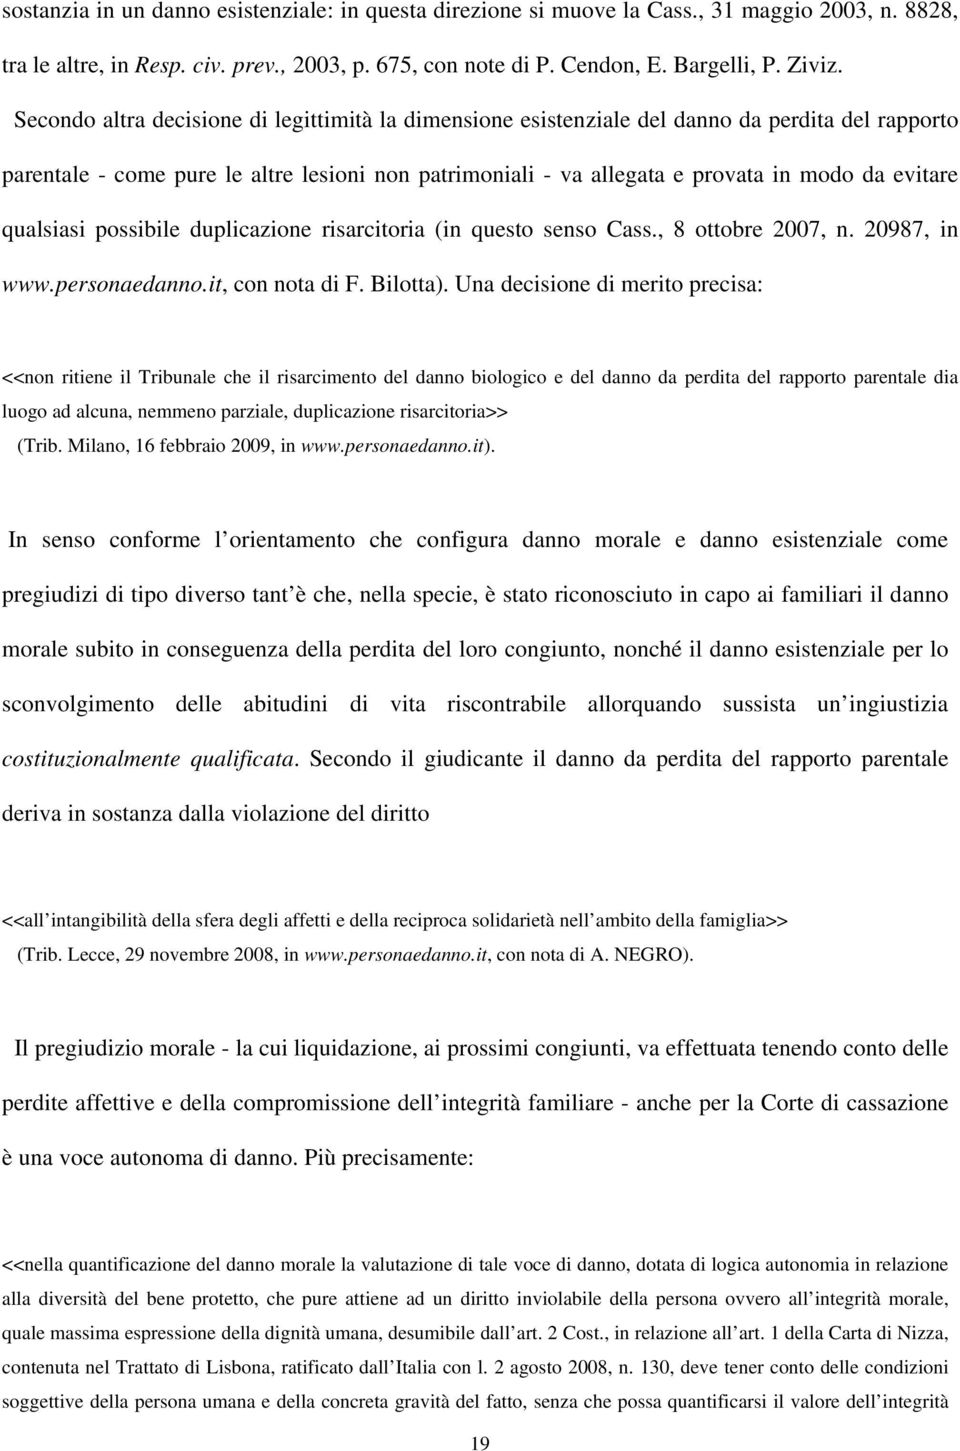 qualsiasi possibile duplicazione risarcitoria (in questo senso Cass., 8 ottobre 2007, n. 20987, in www.personaedanno.it, con nota di F. Bilotta).